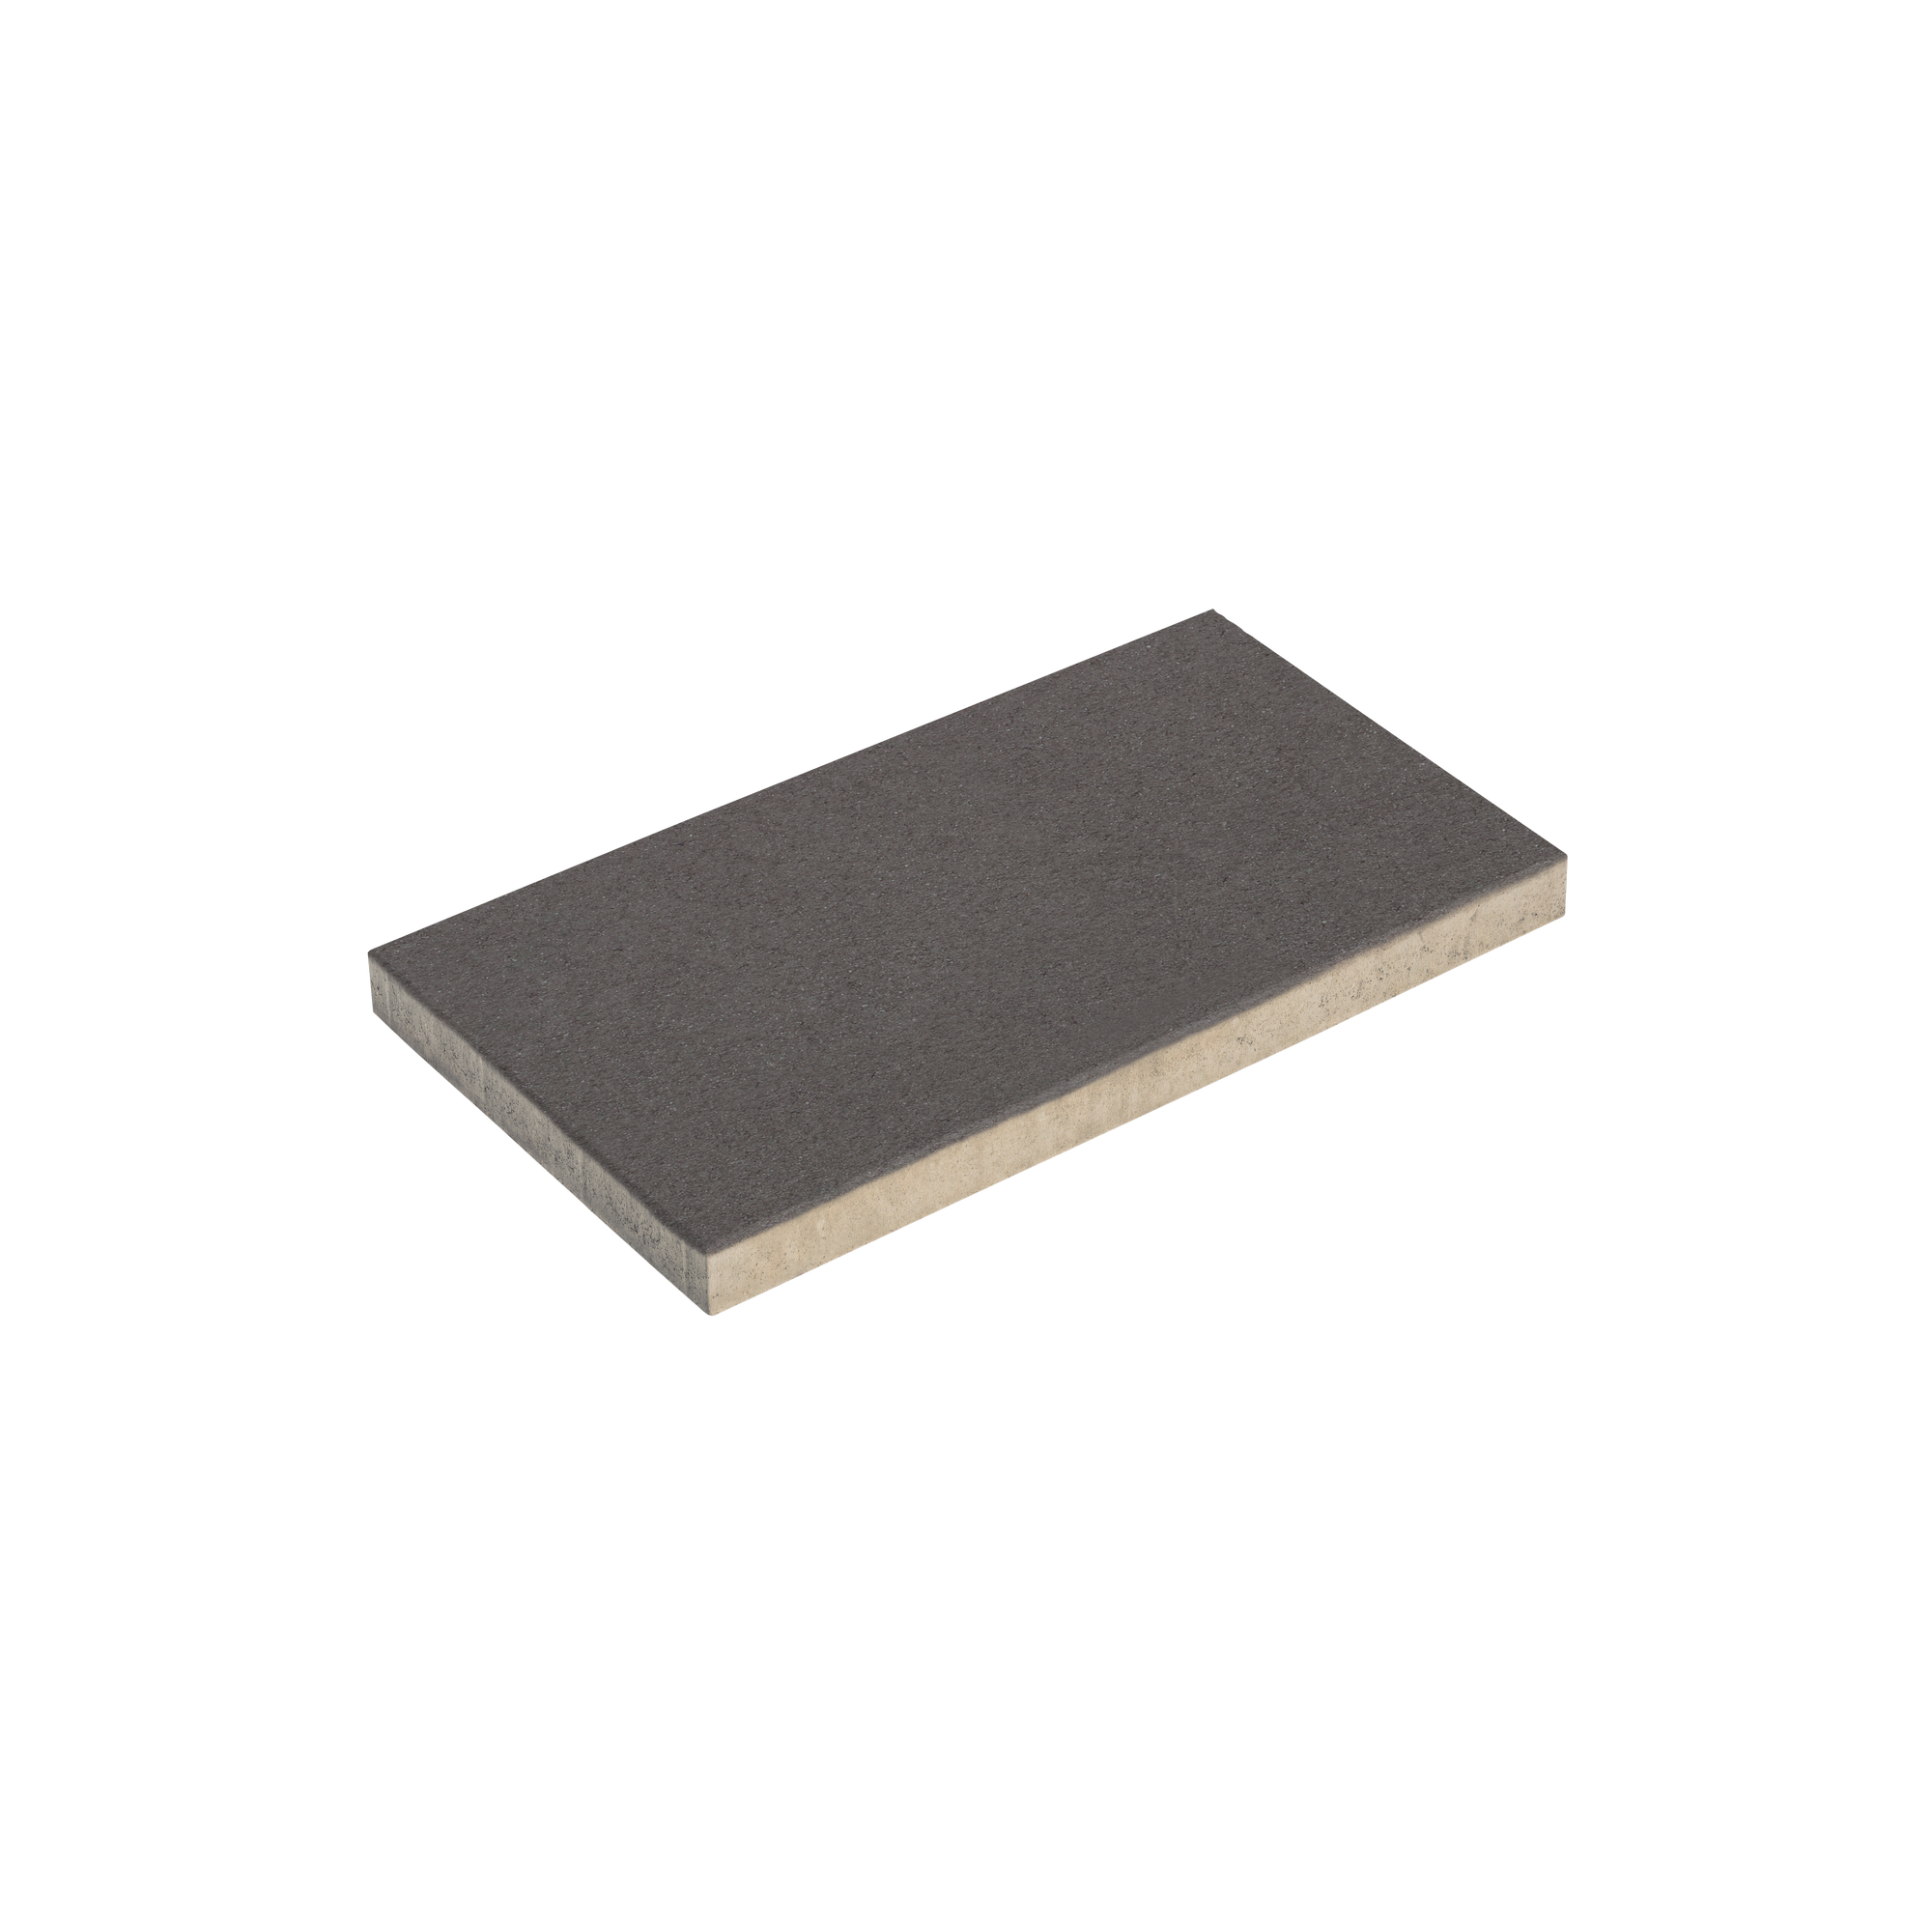 Terrassenplatte 'T-Court Solid' basalt 60 x 30 x 4 cm + product picture